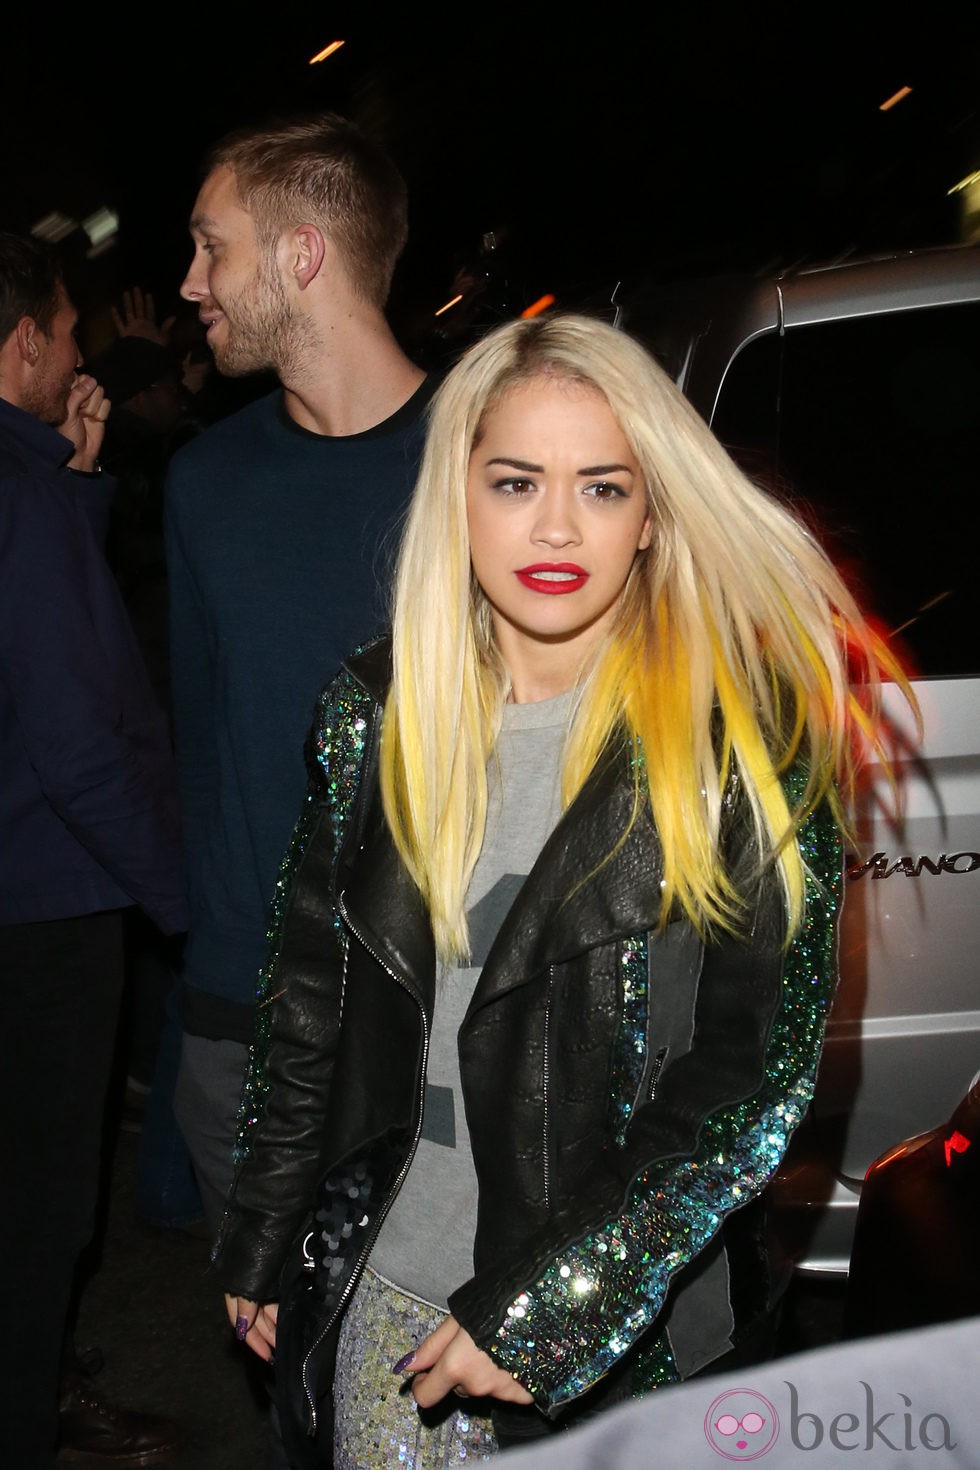 Rita Ora y Calvin Harris, paseo nocturno por Londres